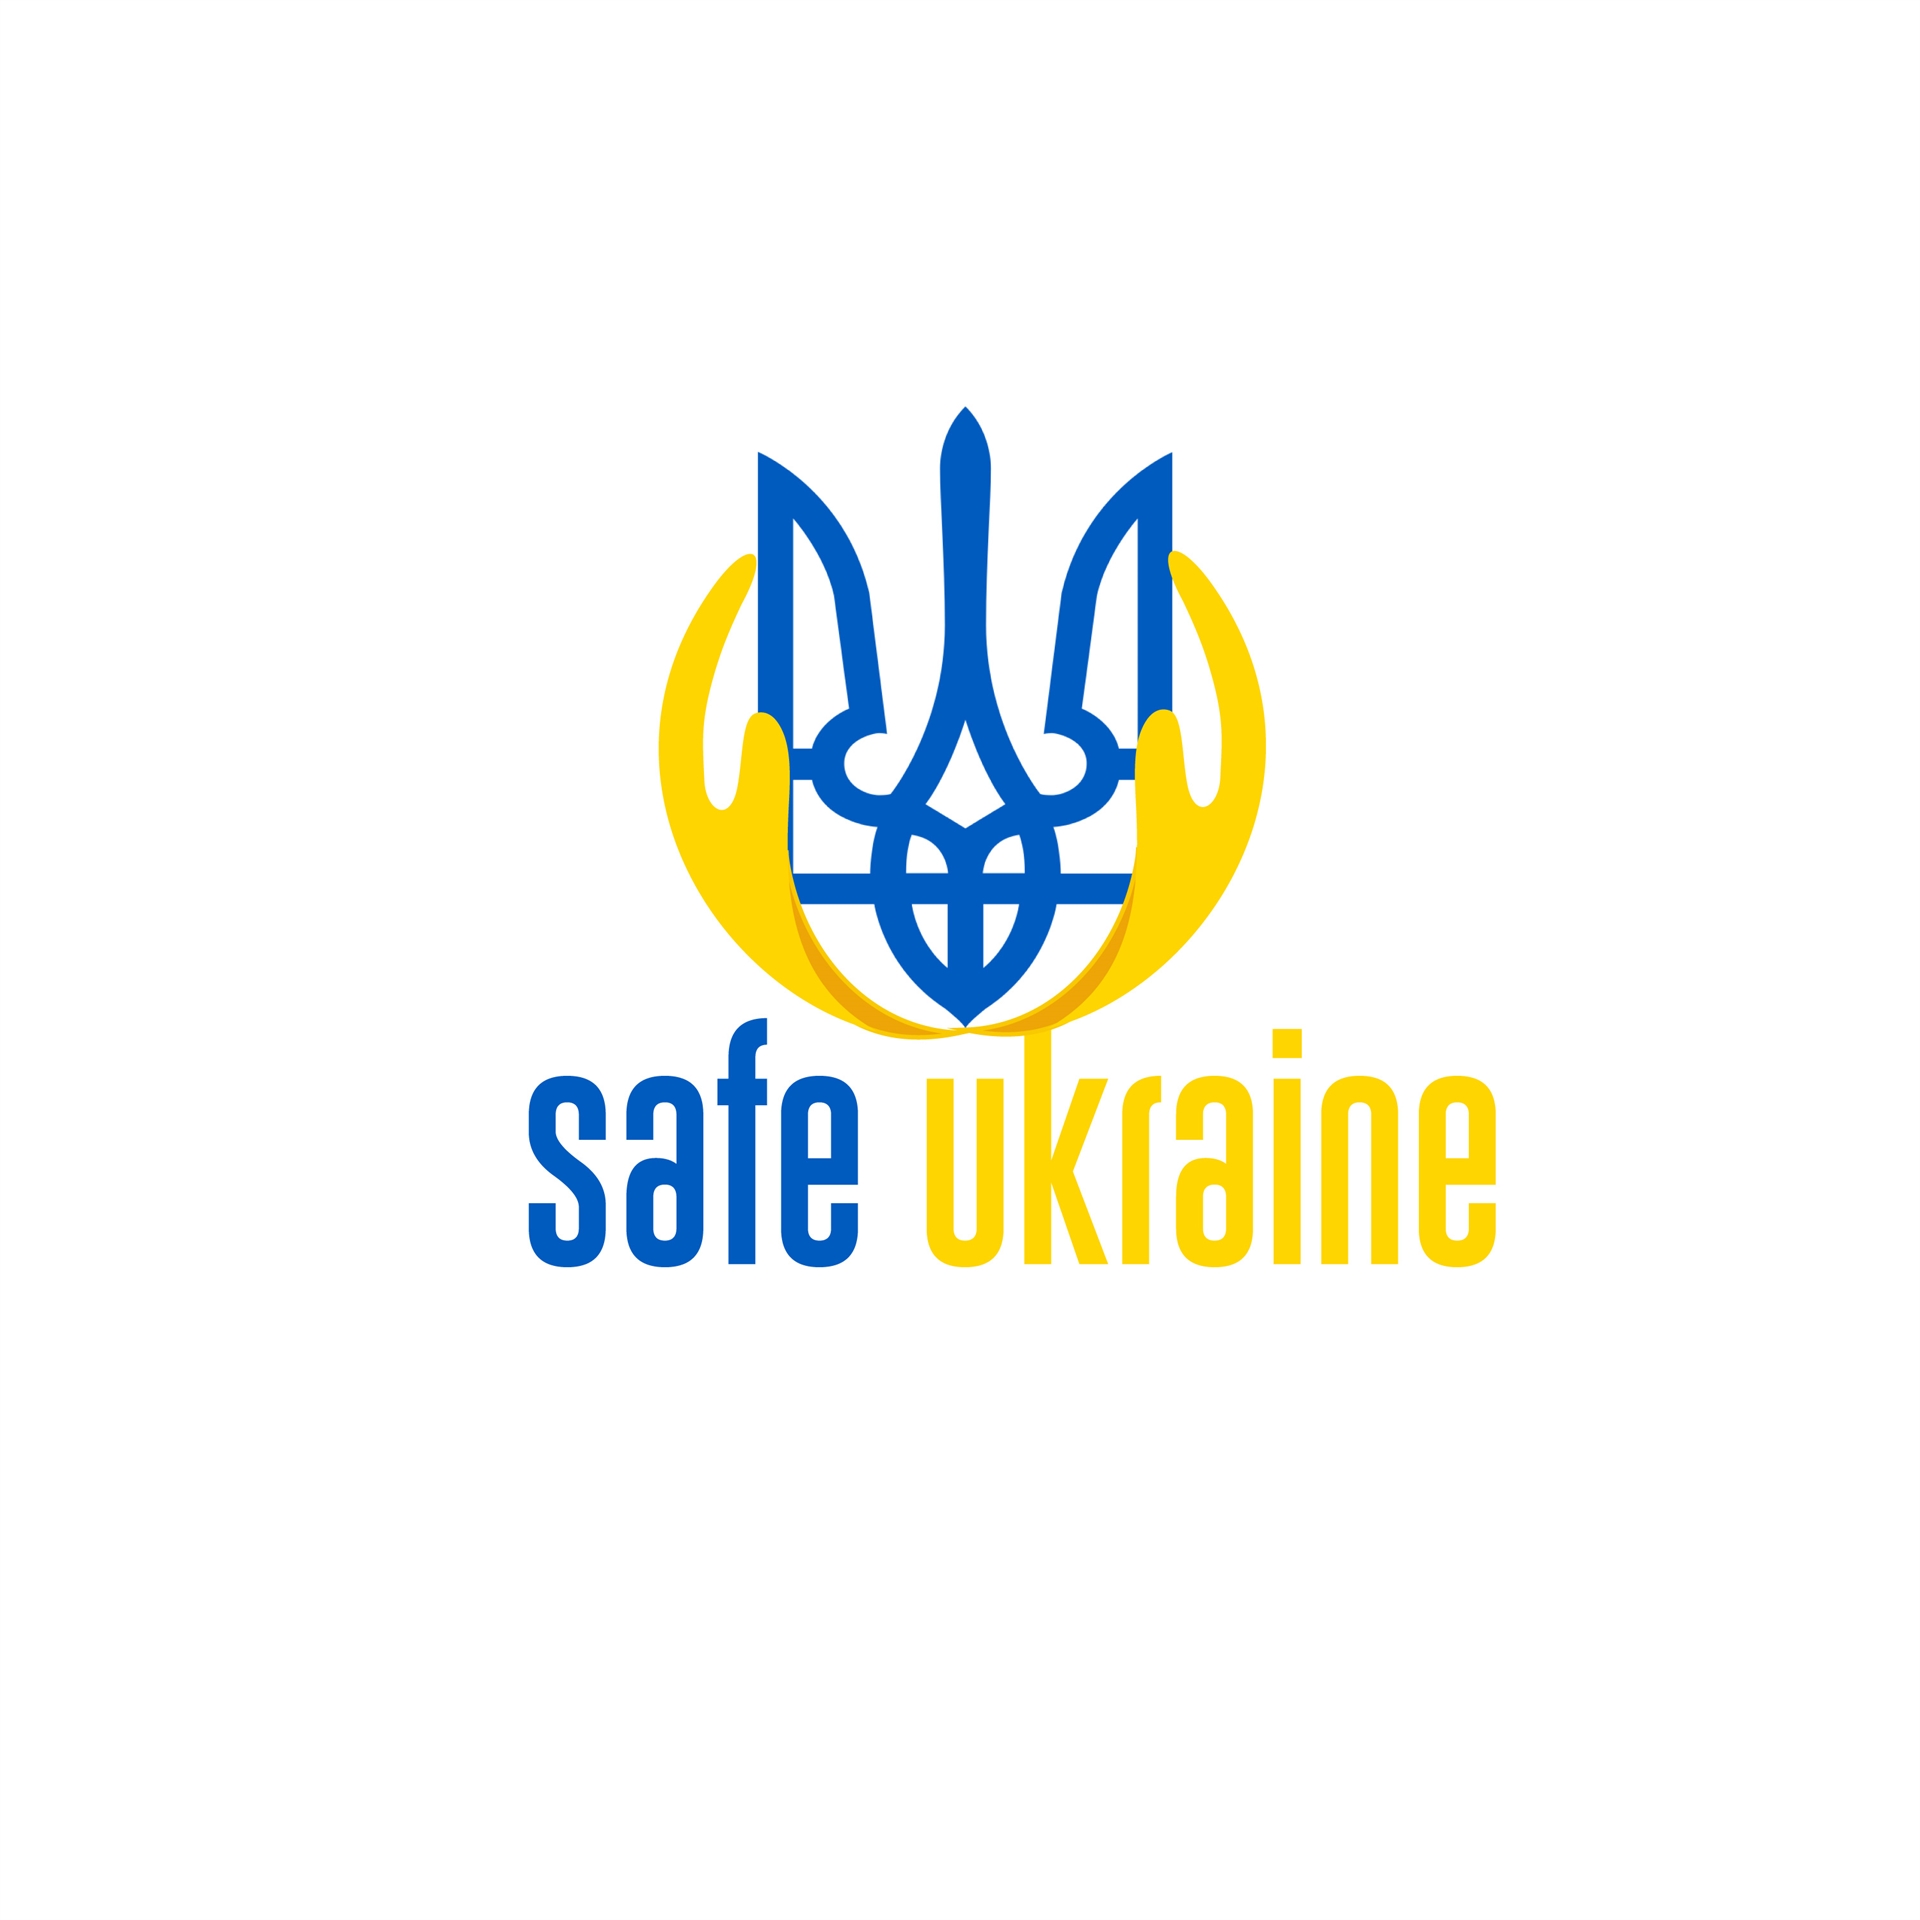 SafeUKR logo